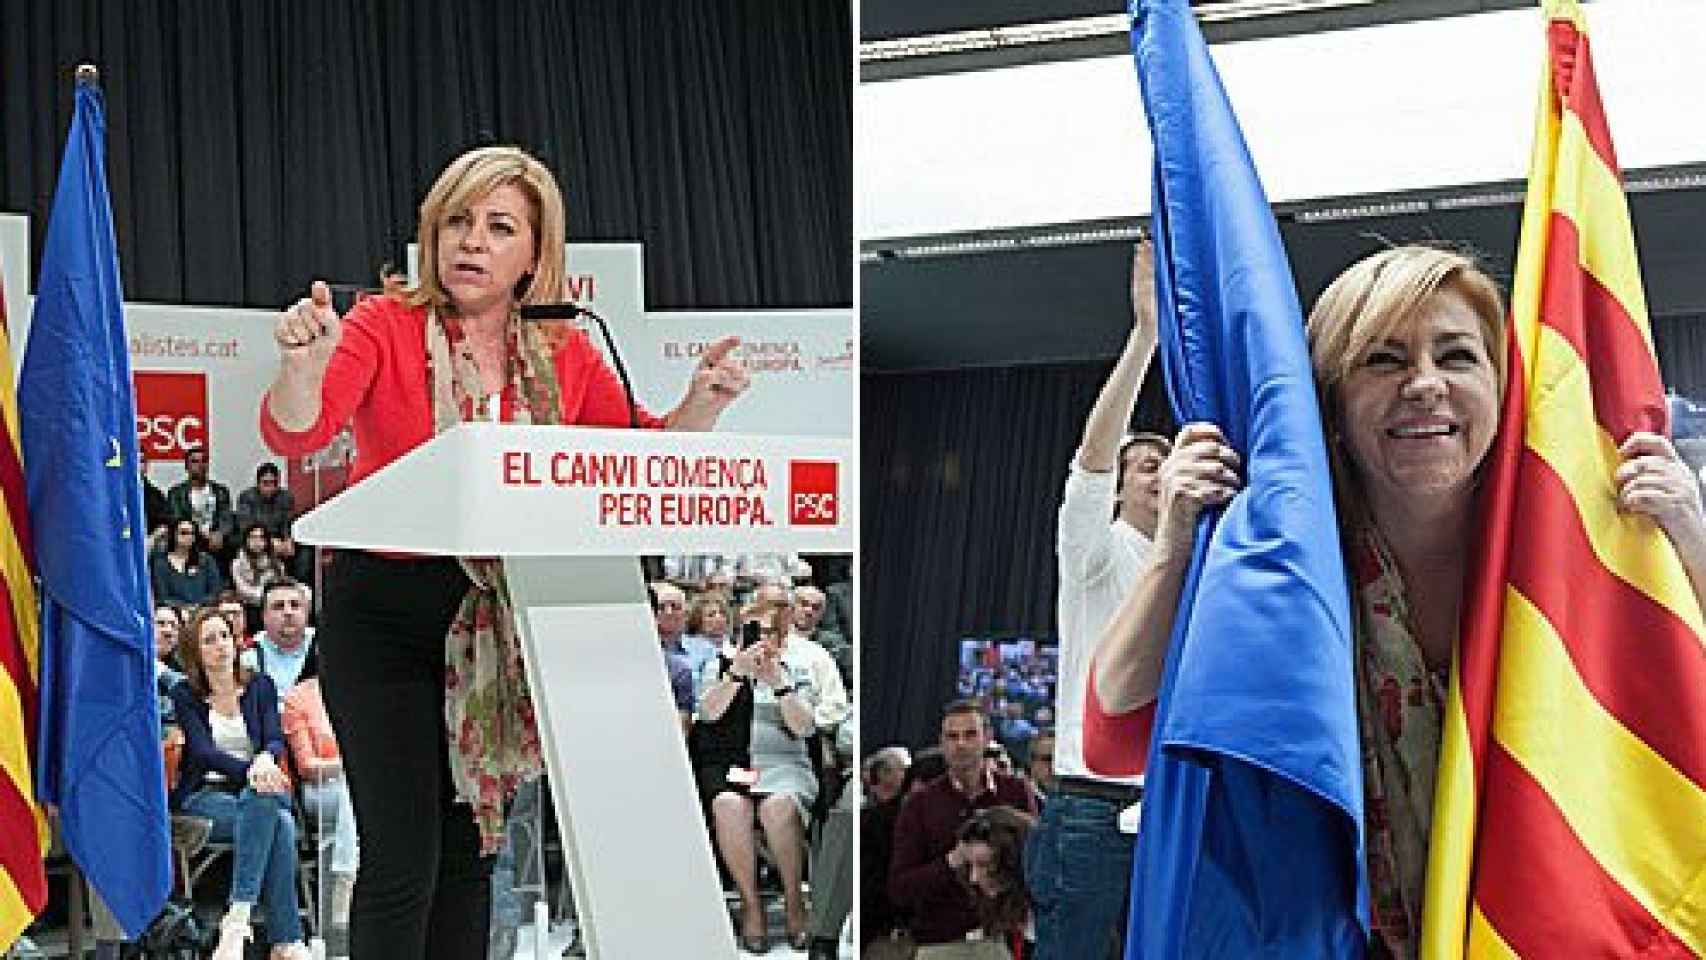 Elena Valenciano, cabeza de lista del PSOE para las elecciones europeas, durante un mitin organizado por el PSC este domingo en Viladecans (Barcelona)